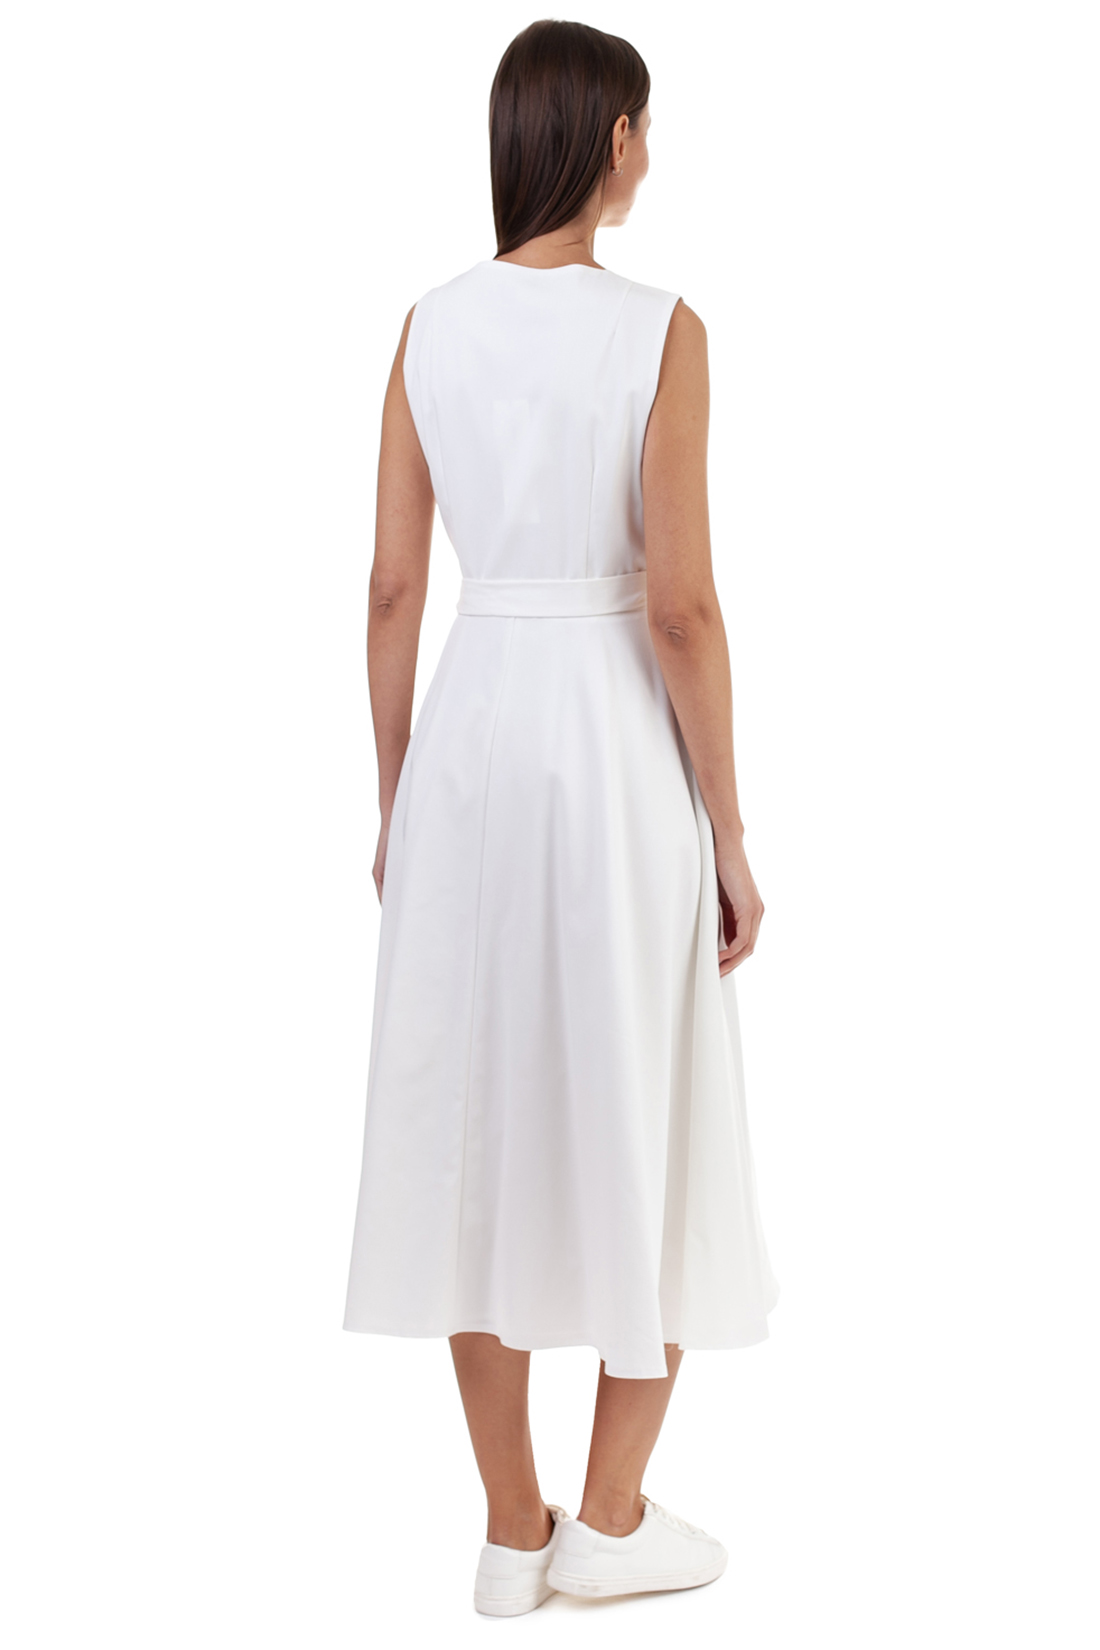 Белое платье с запахом (арт. baon B458125), размер M, цвет белый Белое платье с запахом (арт. baon B458125) - фото 5